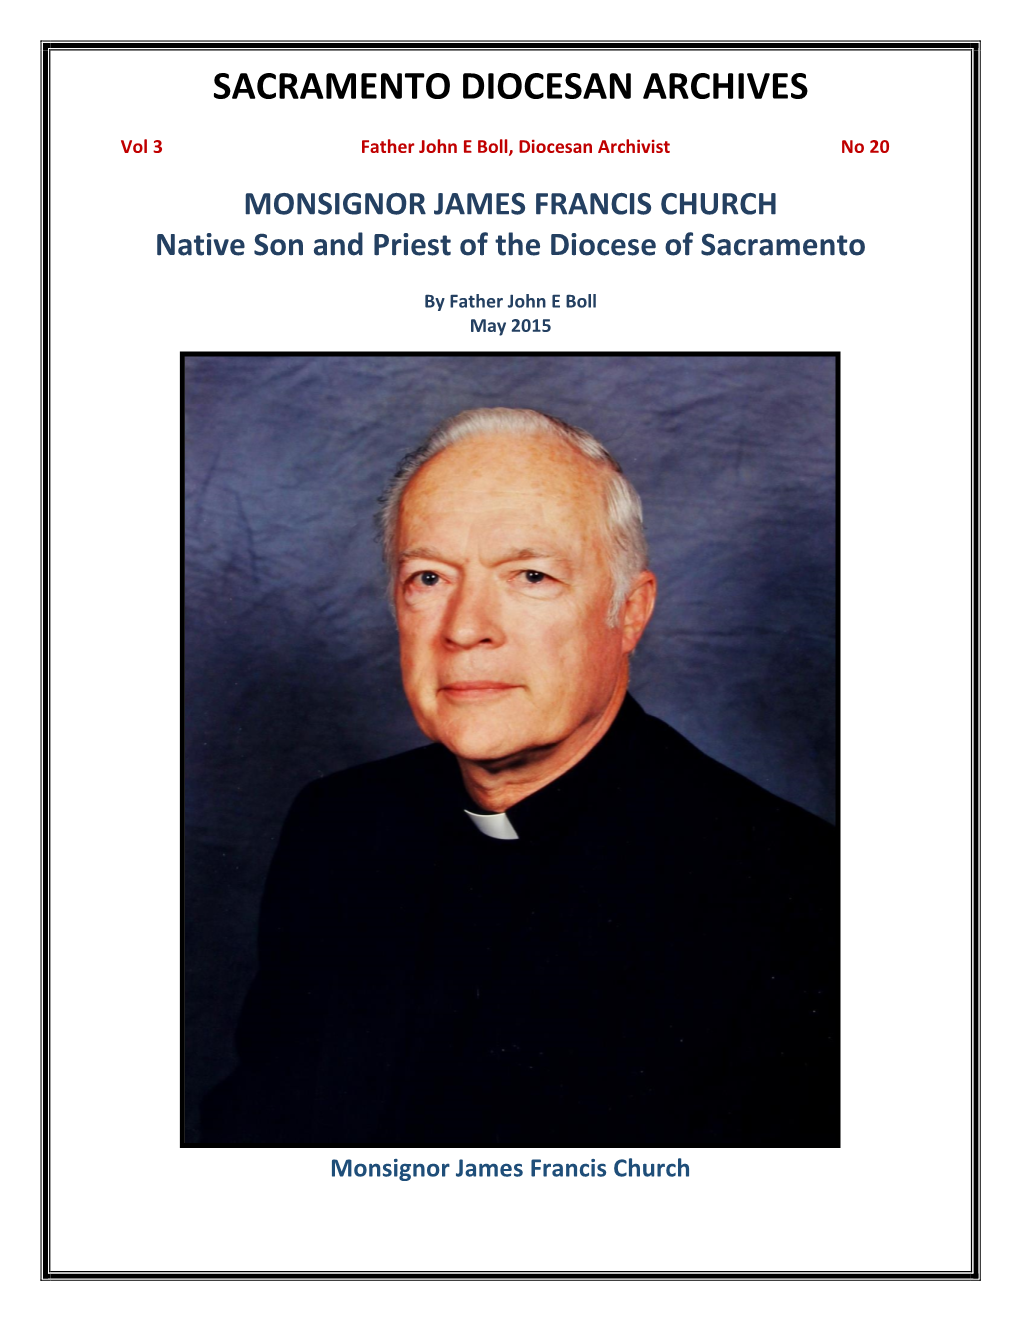 Vol 3, No 20 Msgr James Francis Church